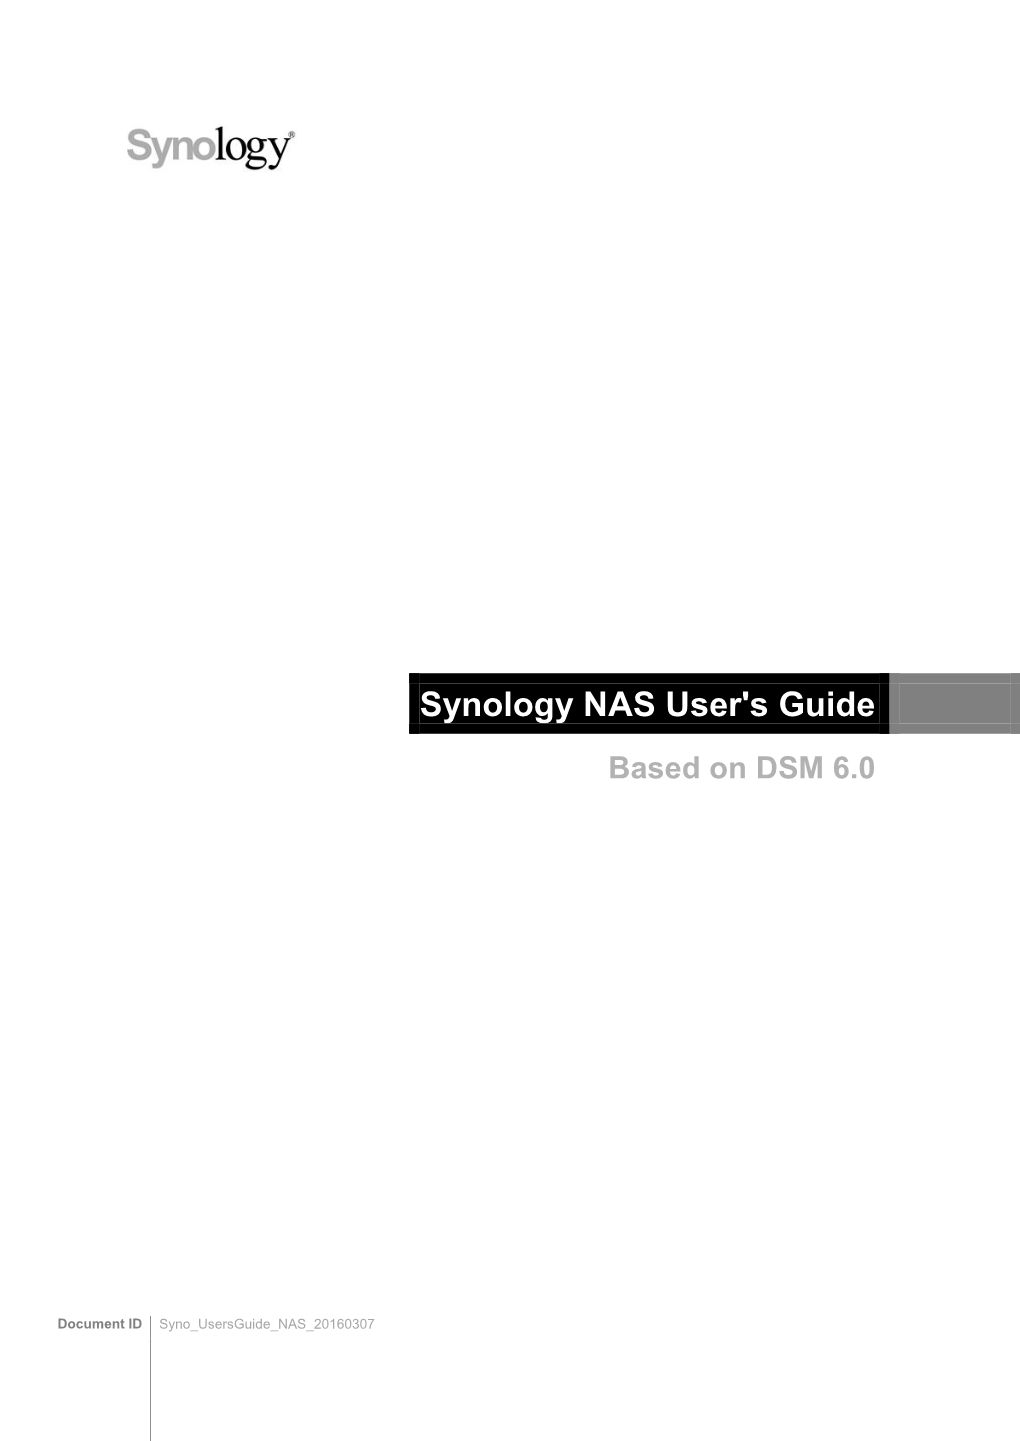 Synology NAS User's Guide Based on DSM 6.0